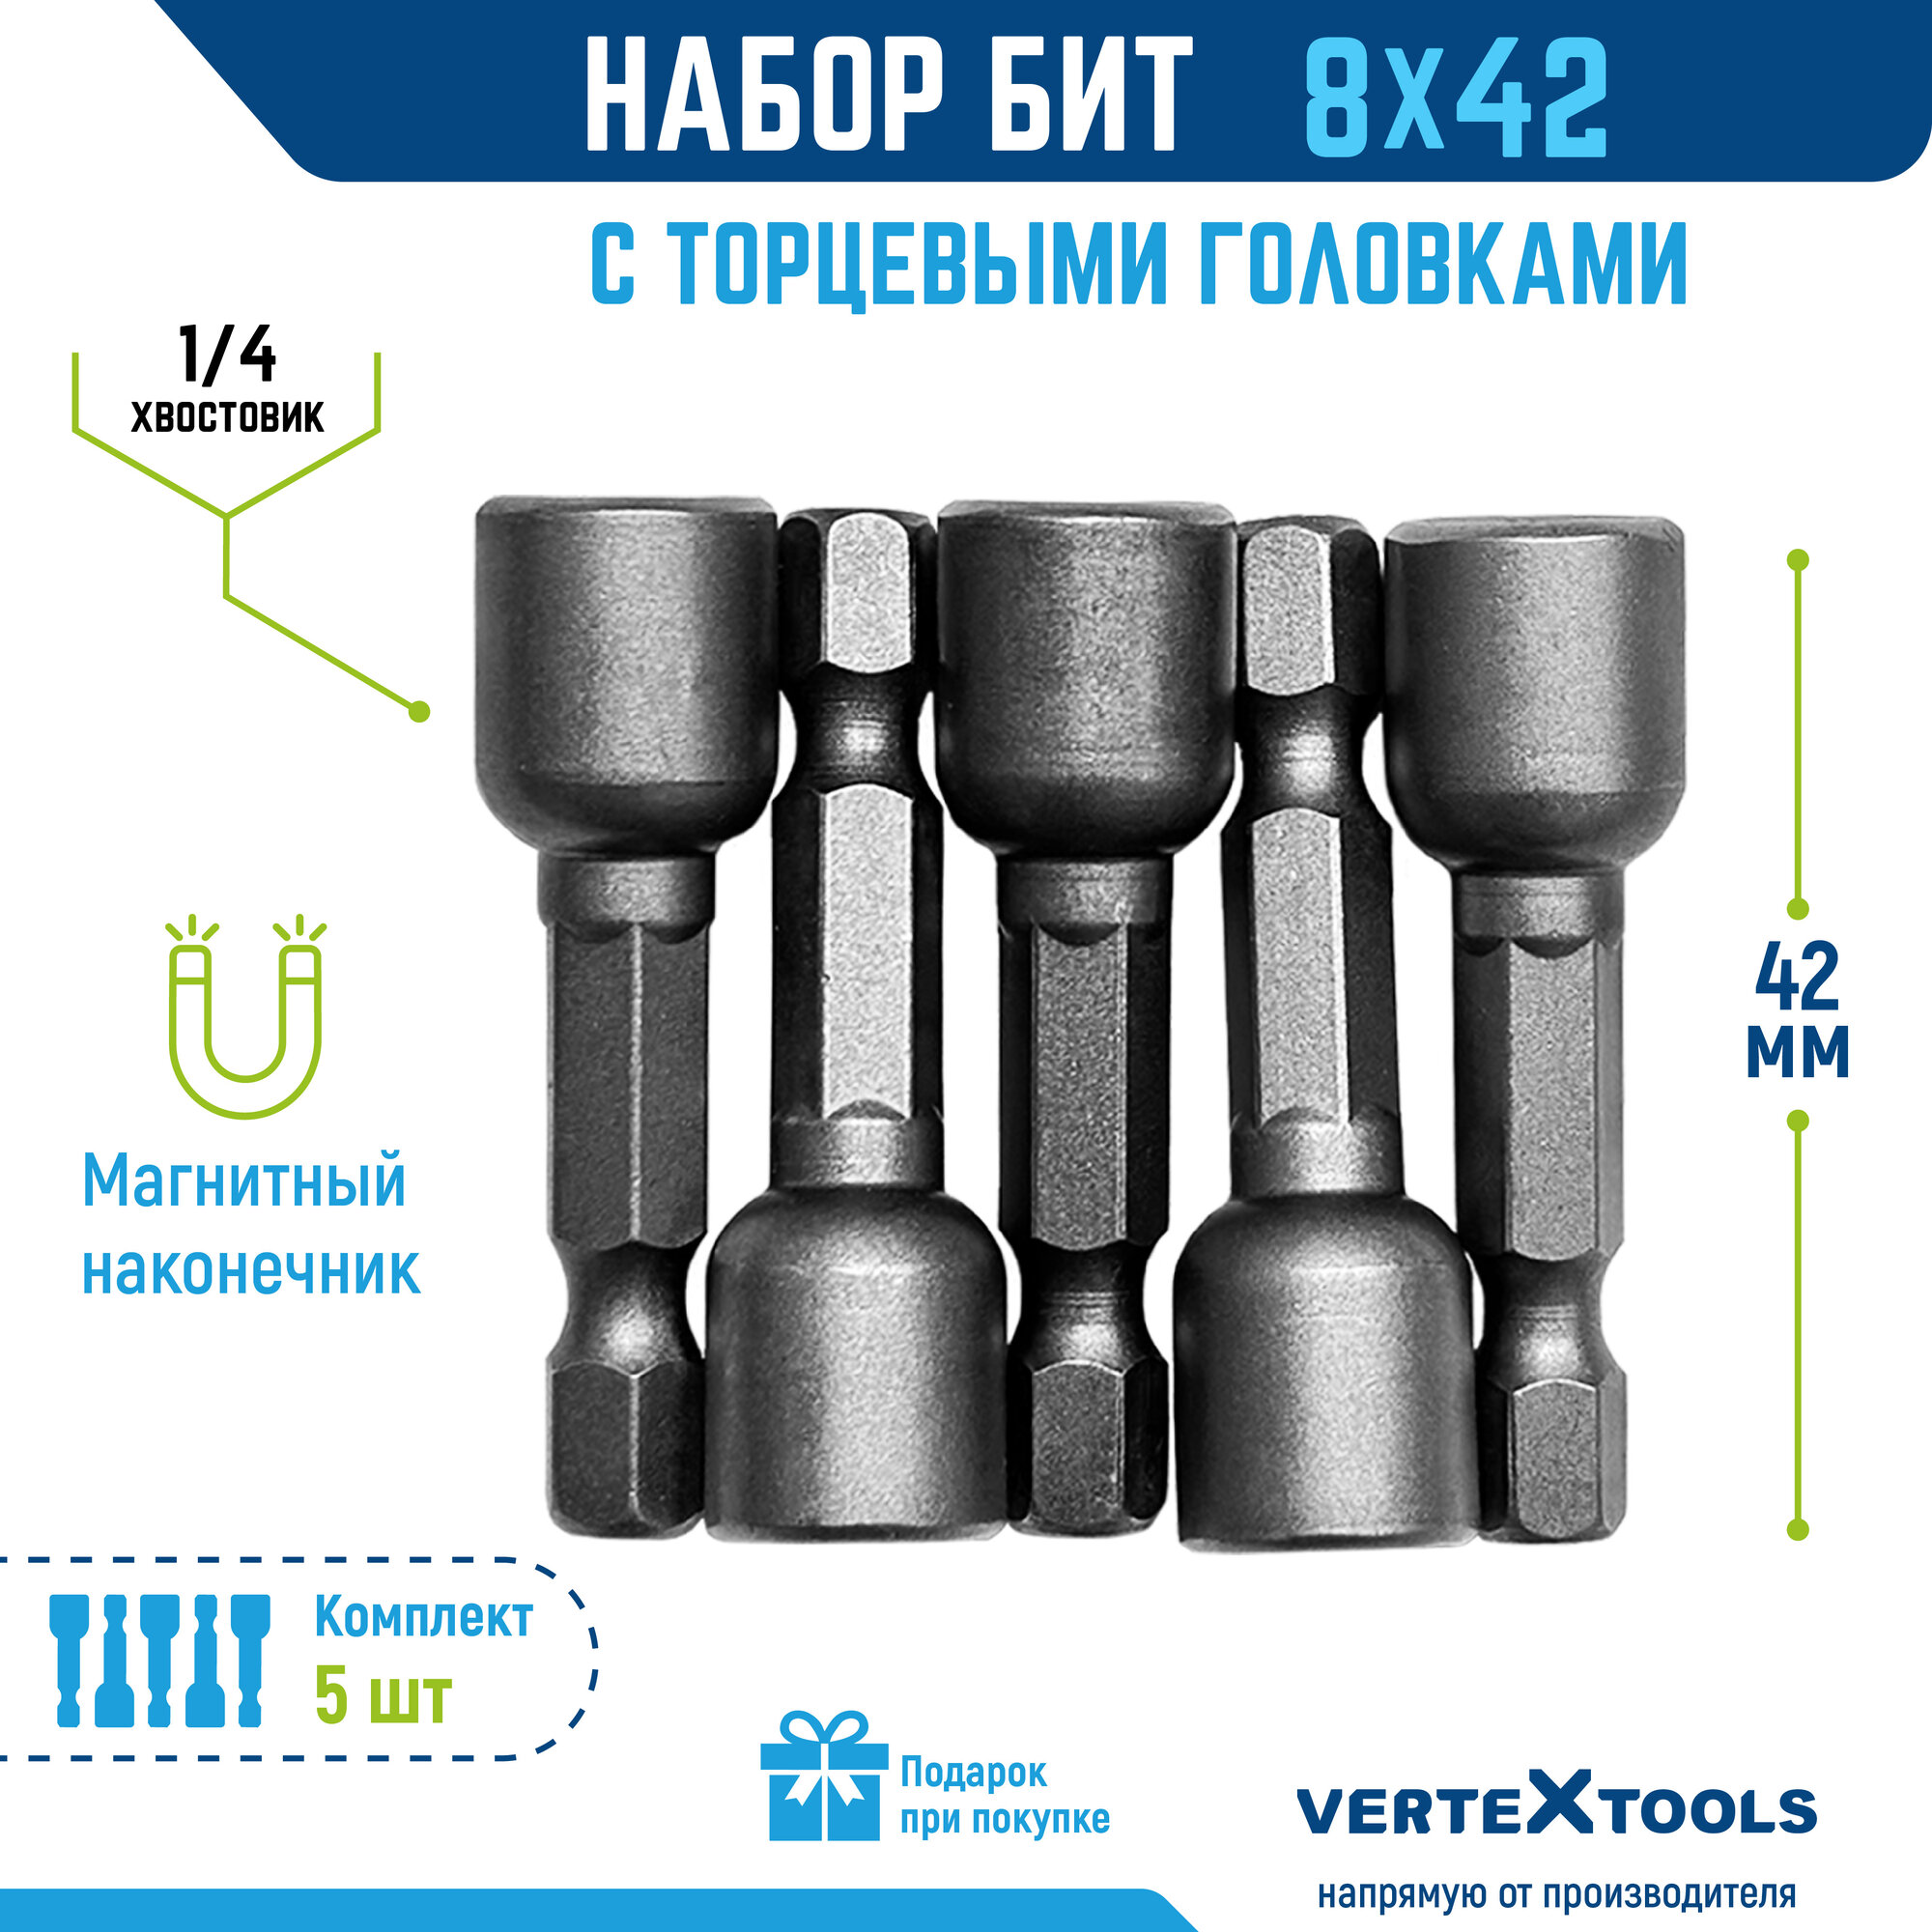 Биты с торцевыми головками VertexTools 8х42 мм, 5 шт.